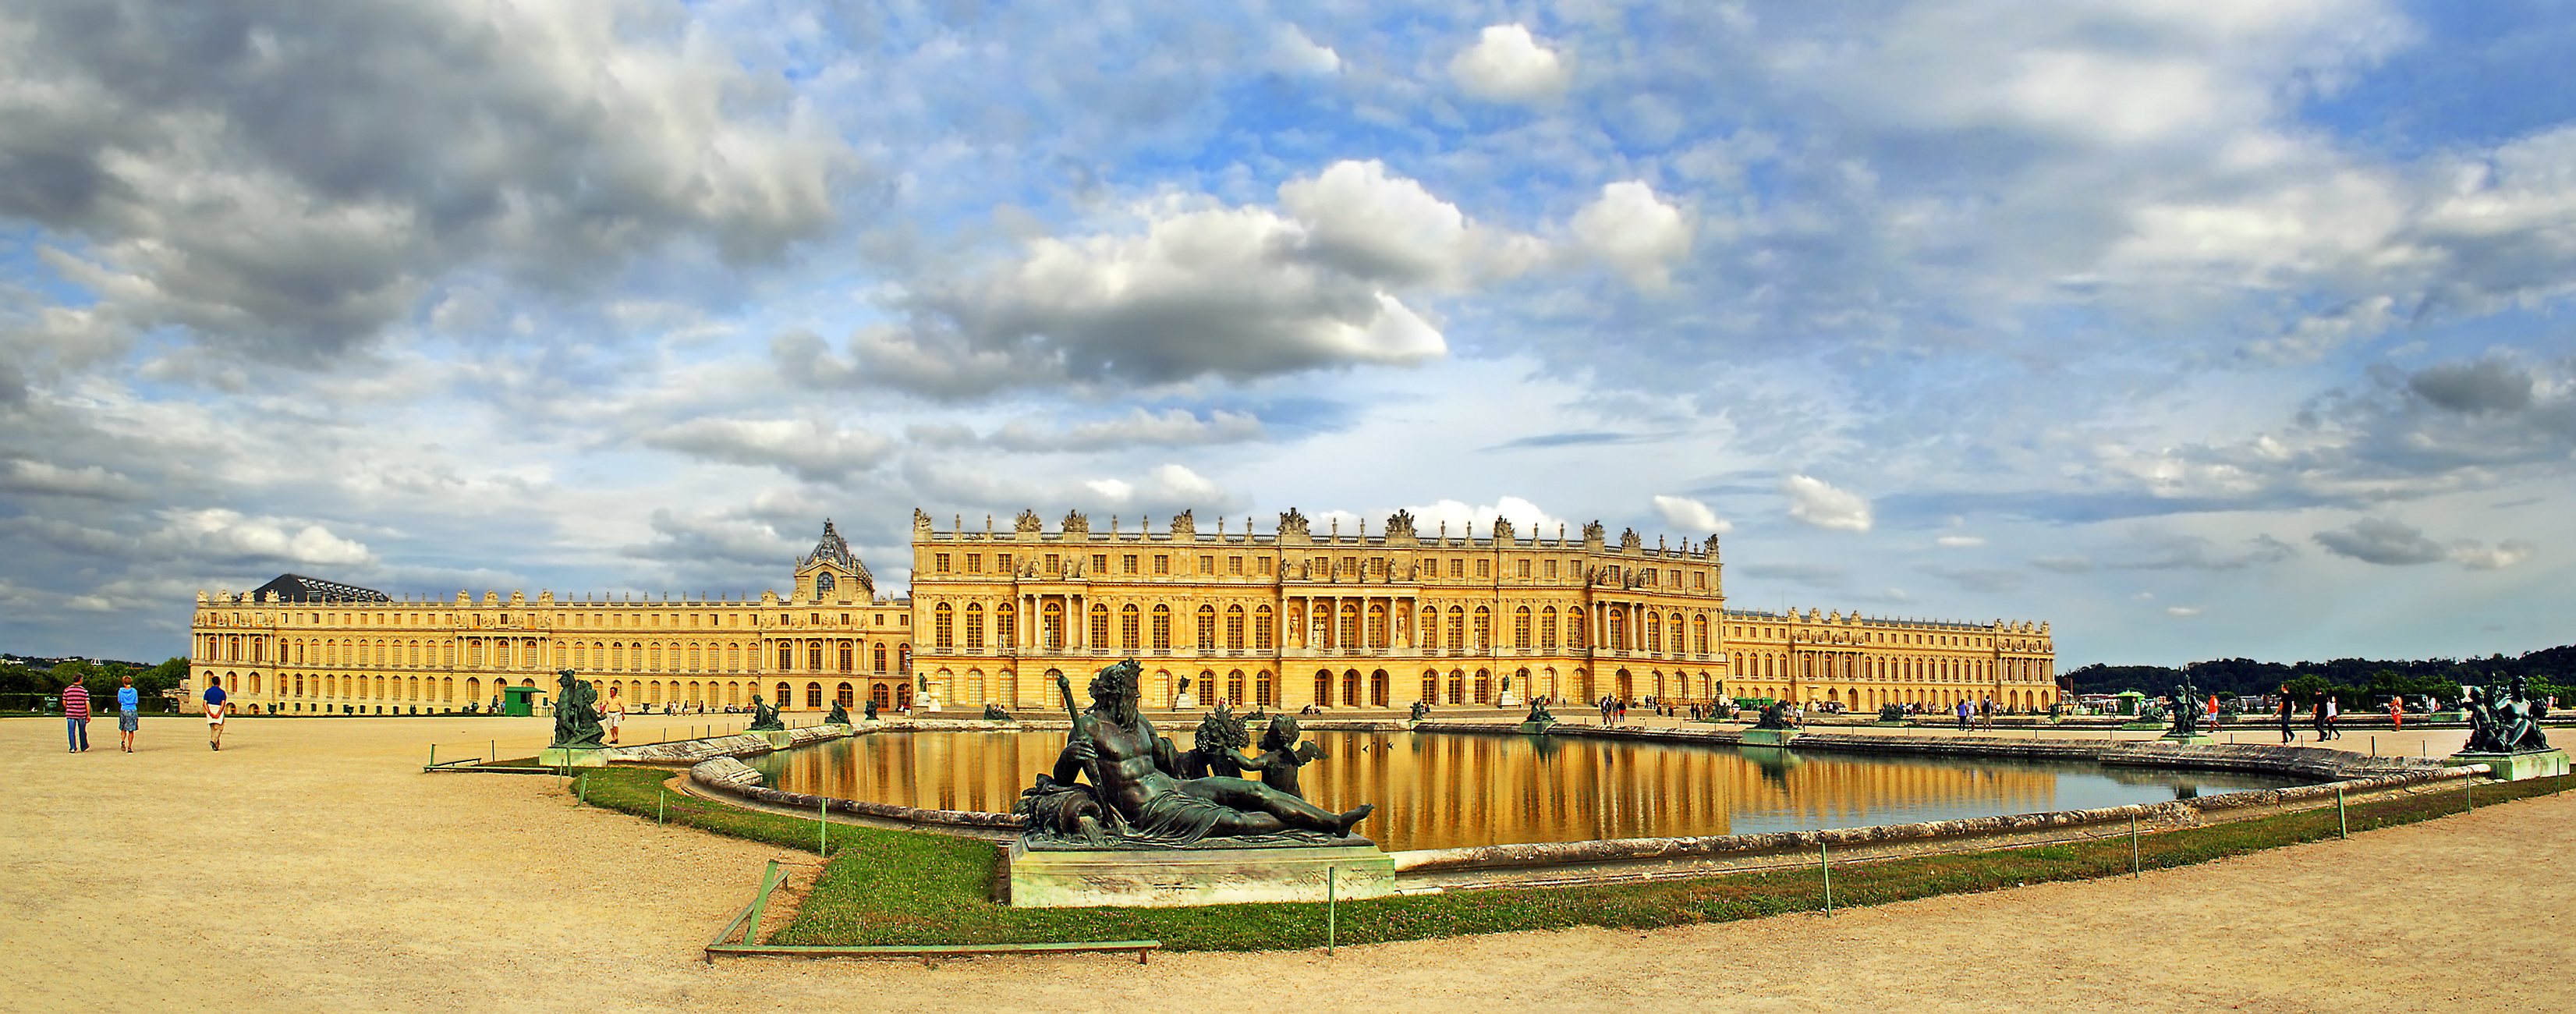 Le château royal de Versailles, France, patrimoine mondial de l'UNESCO © Pecold - stock.adobe.com